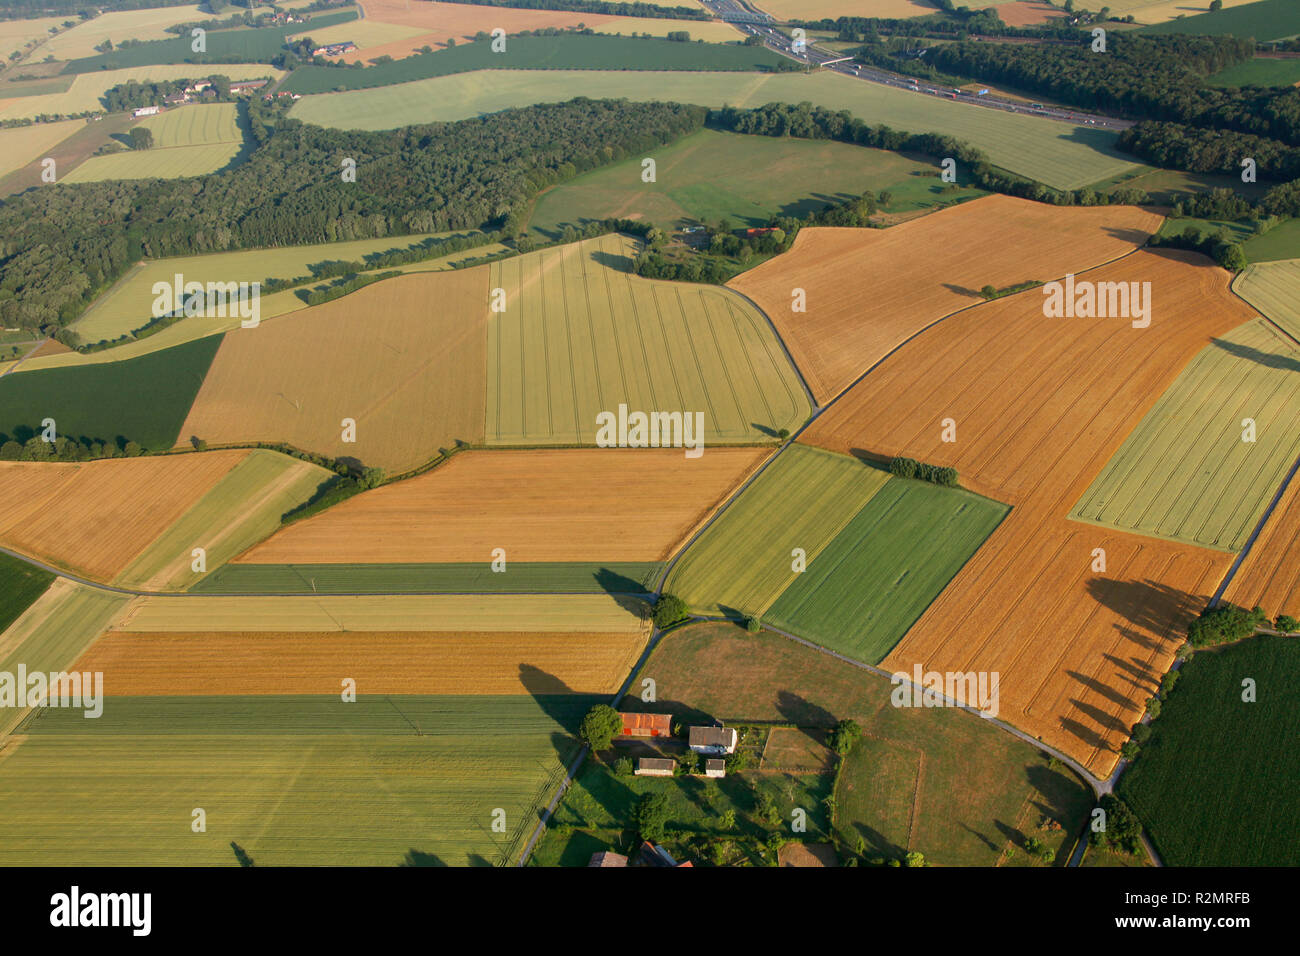 Vista aérea, los campos de grano en la zona del Ruhr, agricultura, parcelas, comunidad agrícola Altenbögge, Bönen, área de Ruhr, Renania del Norte-Westfalia, Alemania, Europa Foto de stock